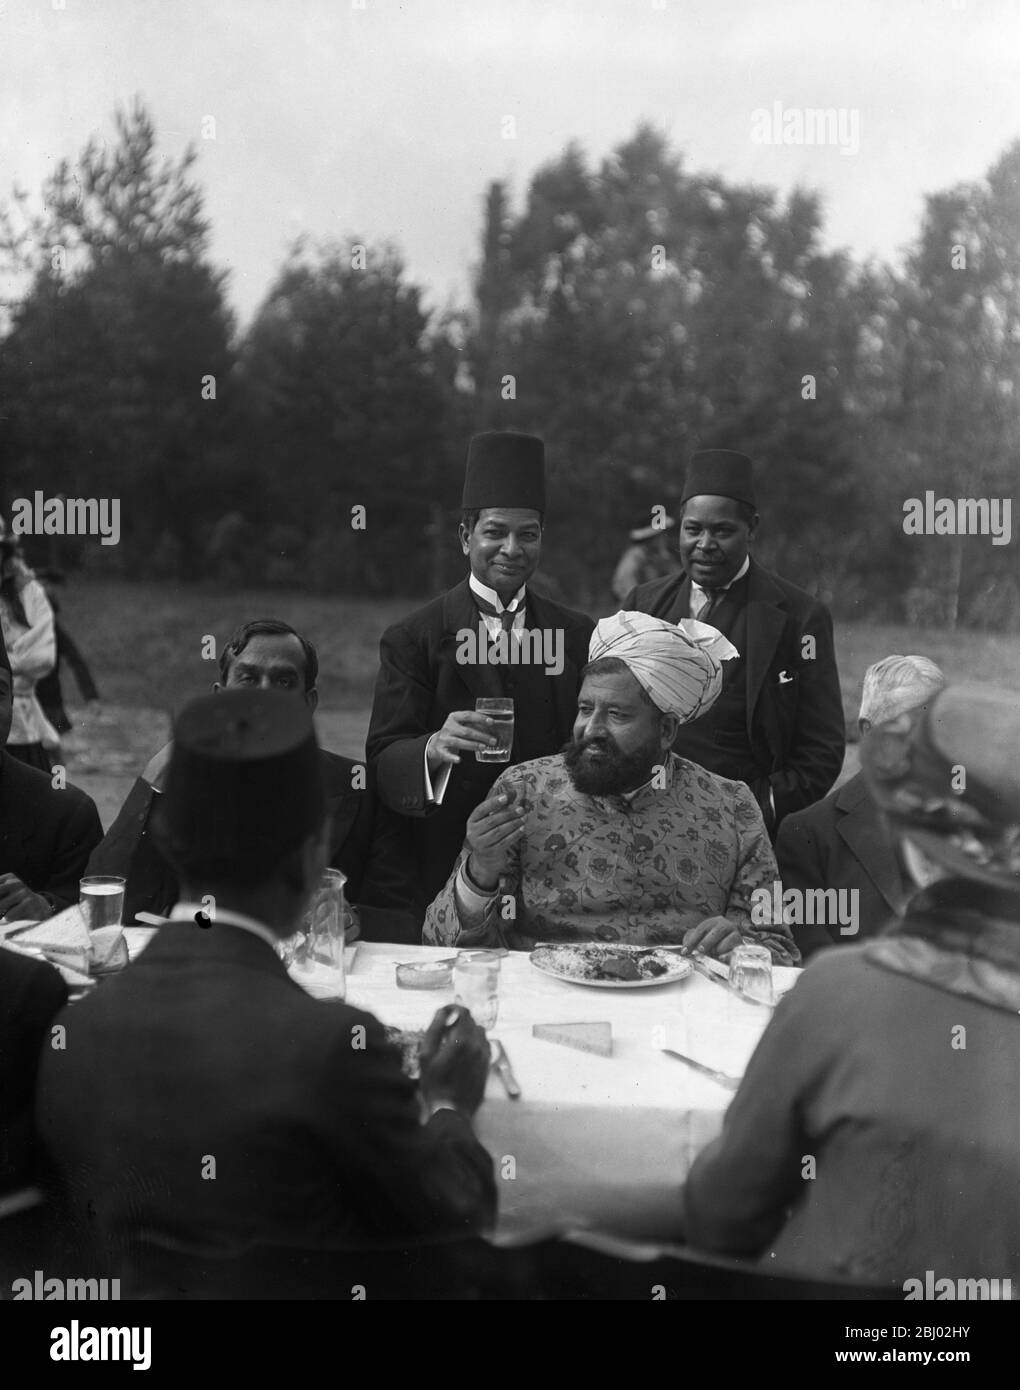 L'Imam mangiare durante la festa del sacrificio nei giardini della Moschea a Woking , Surrey . - 8 ottobre 1916 - la Moschea di Shah Jahan fu la prima moschea costruita appositamente in Europa al di fuori della Spagna musulmana Foto Stock